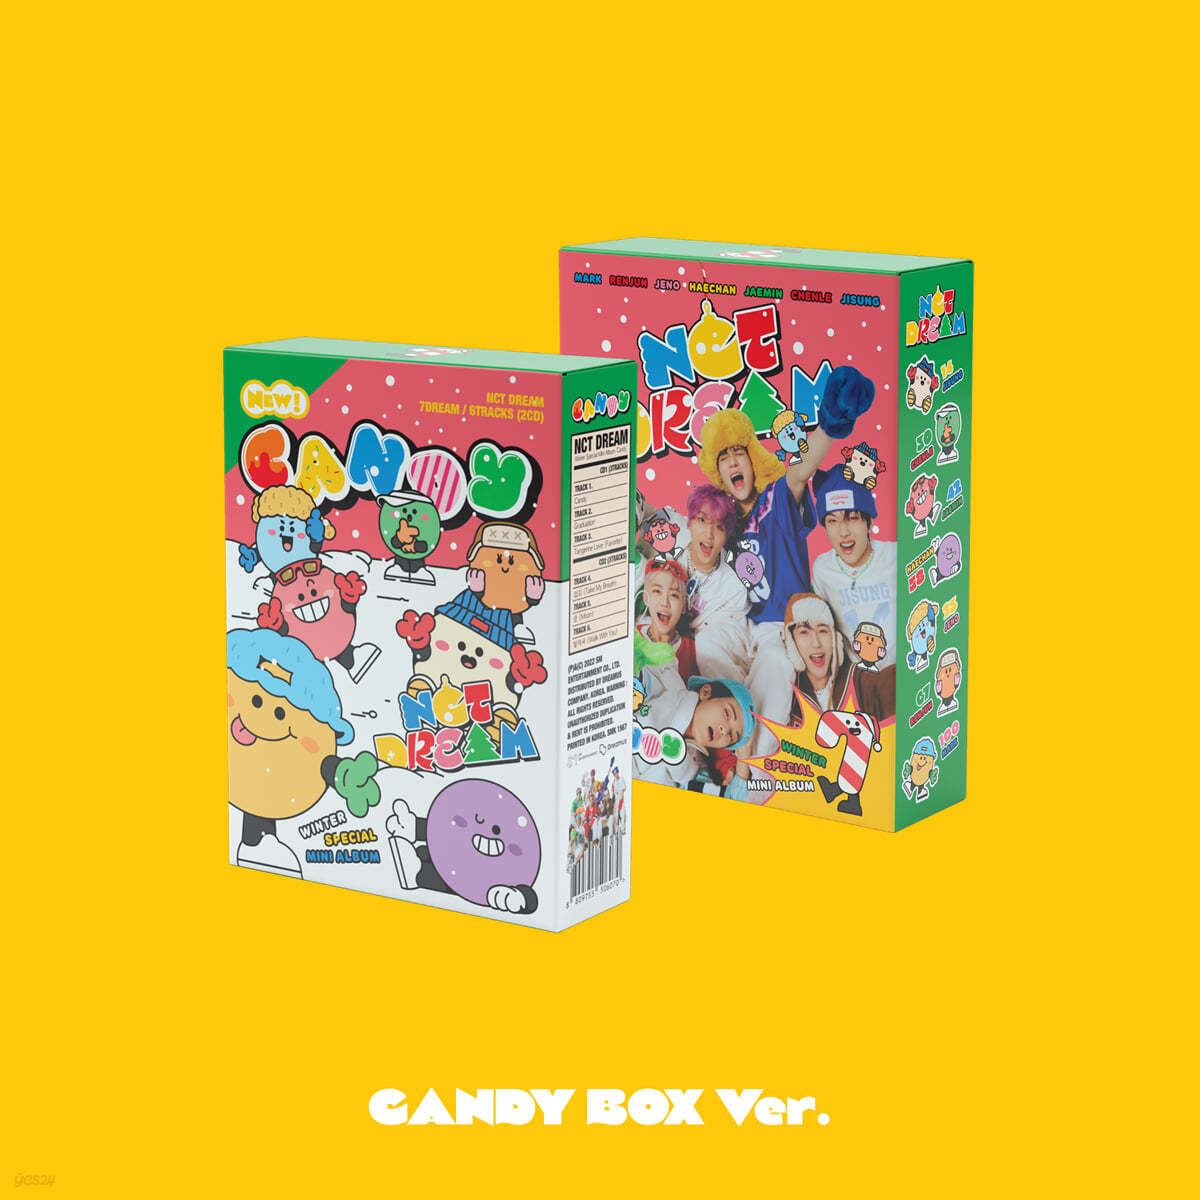 엔시티 드림 (NCT DREAM) - 겨울 스페셜 미니앨범 'Candy' [Special Ver.](초회한정반)